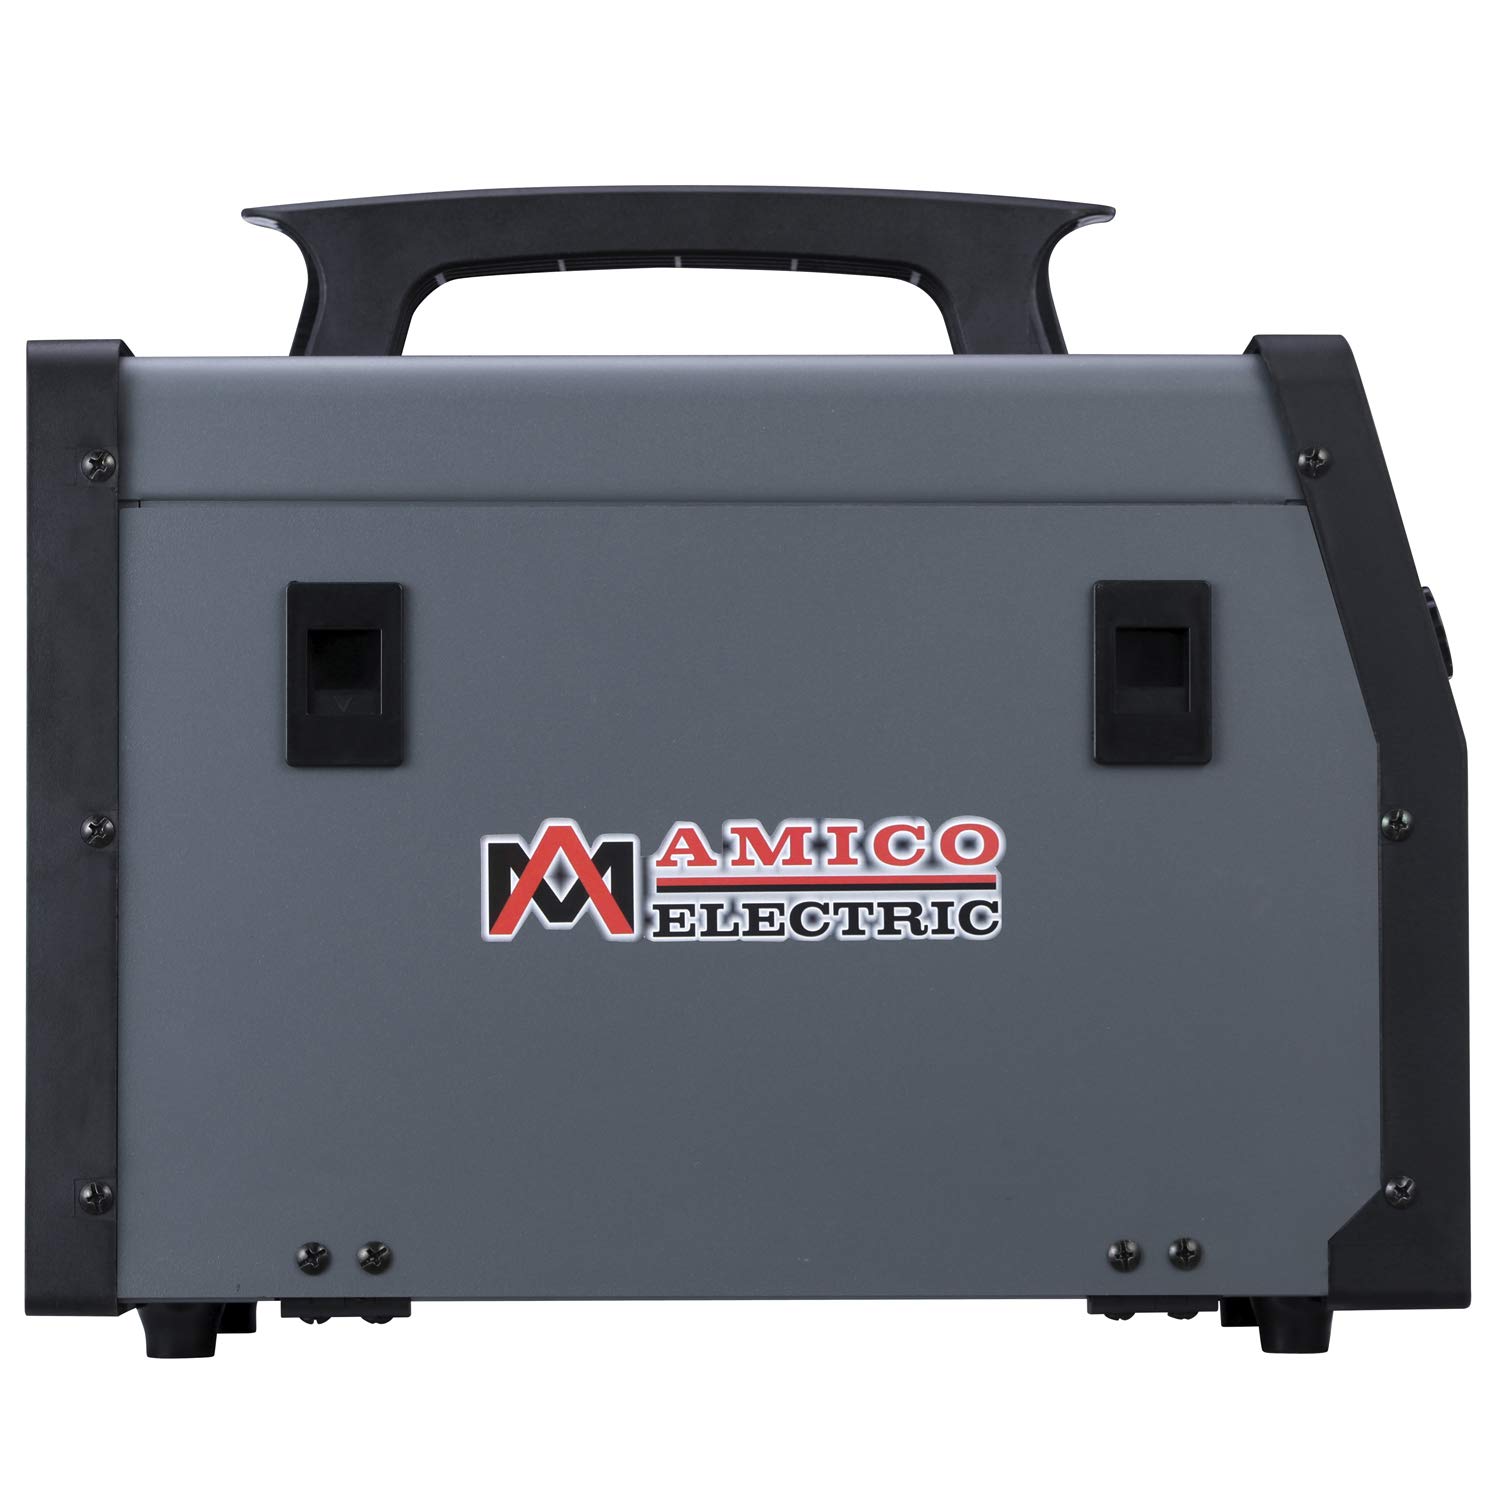 Amico MIG-130A, 130 Amp MIG/Flux Core Wire Welder, 115/230V Dual Voltage IGBT Inverter Welding Soldering Machine